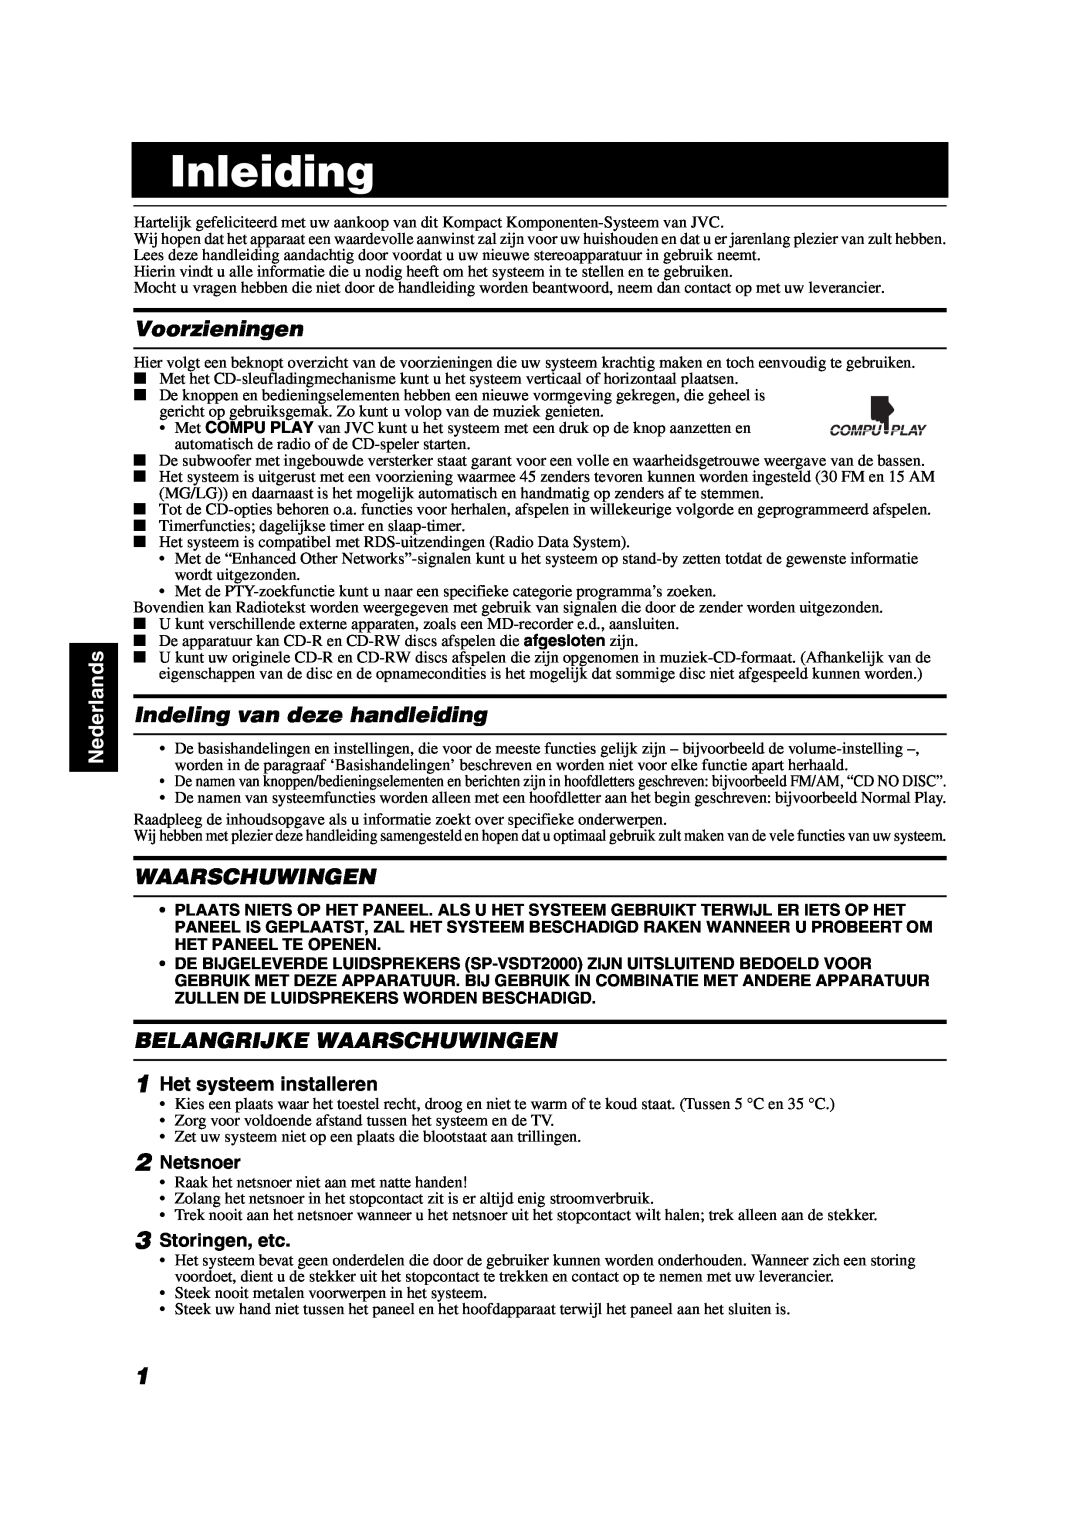 JVC VS-DT2000R manual Inleiding, Voorzieningen, Indeling van deze handleiding, Belangrijke Waarschuwingen, Nederlands 